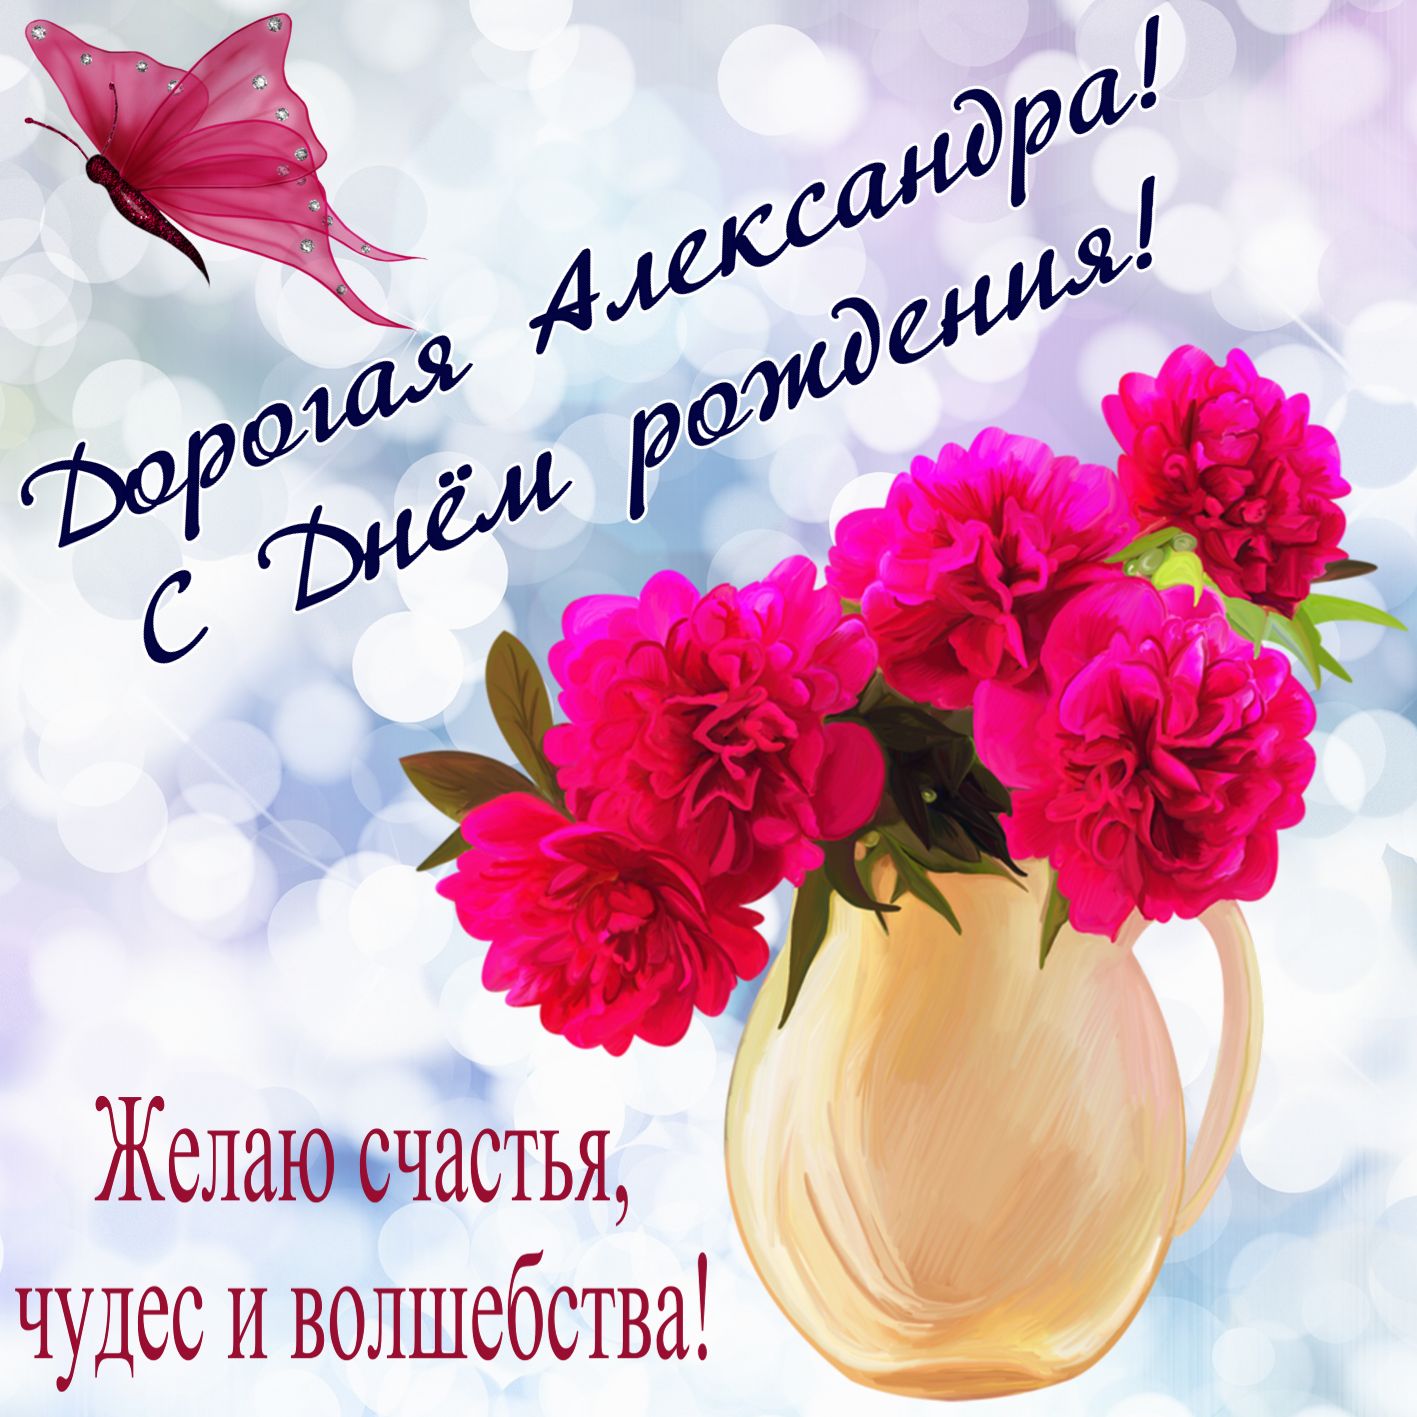 Открытка на День рождения - букет алых цветов в вазе для Александры